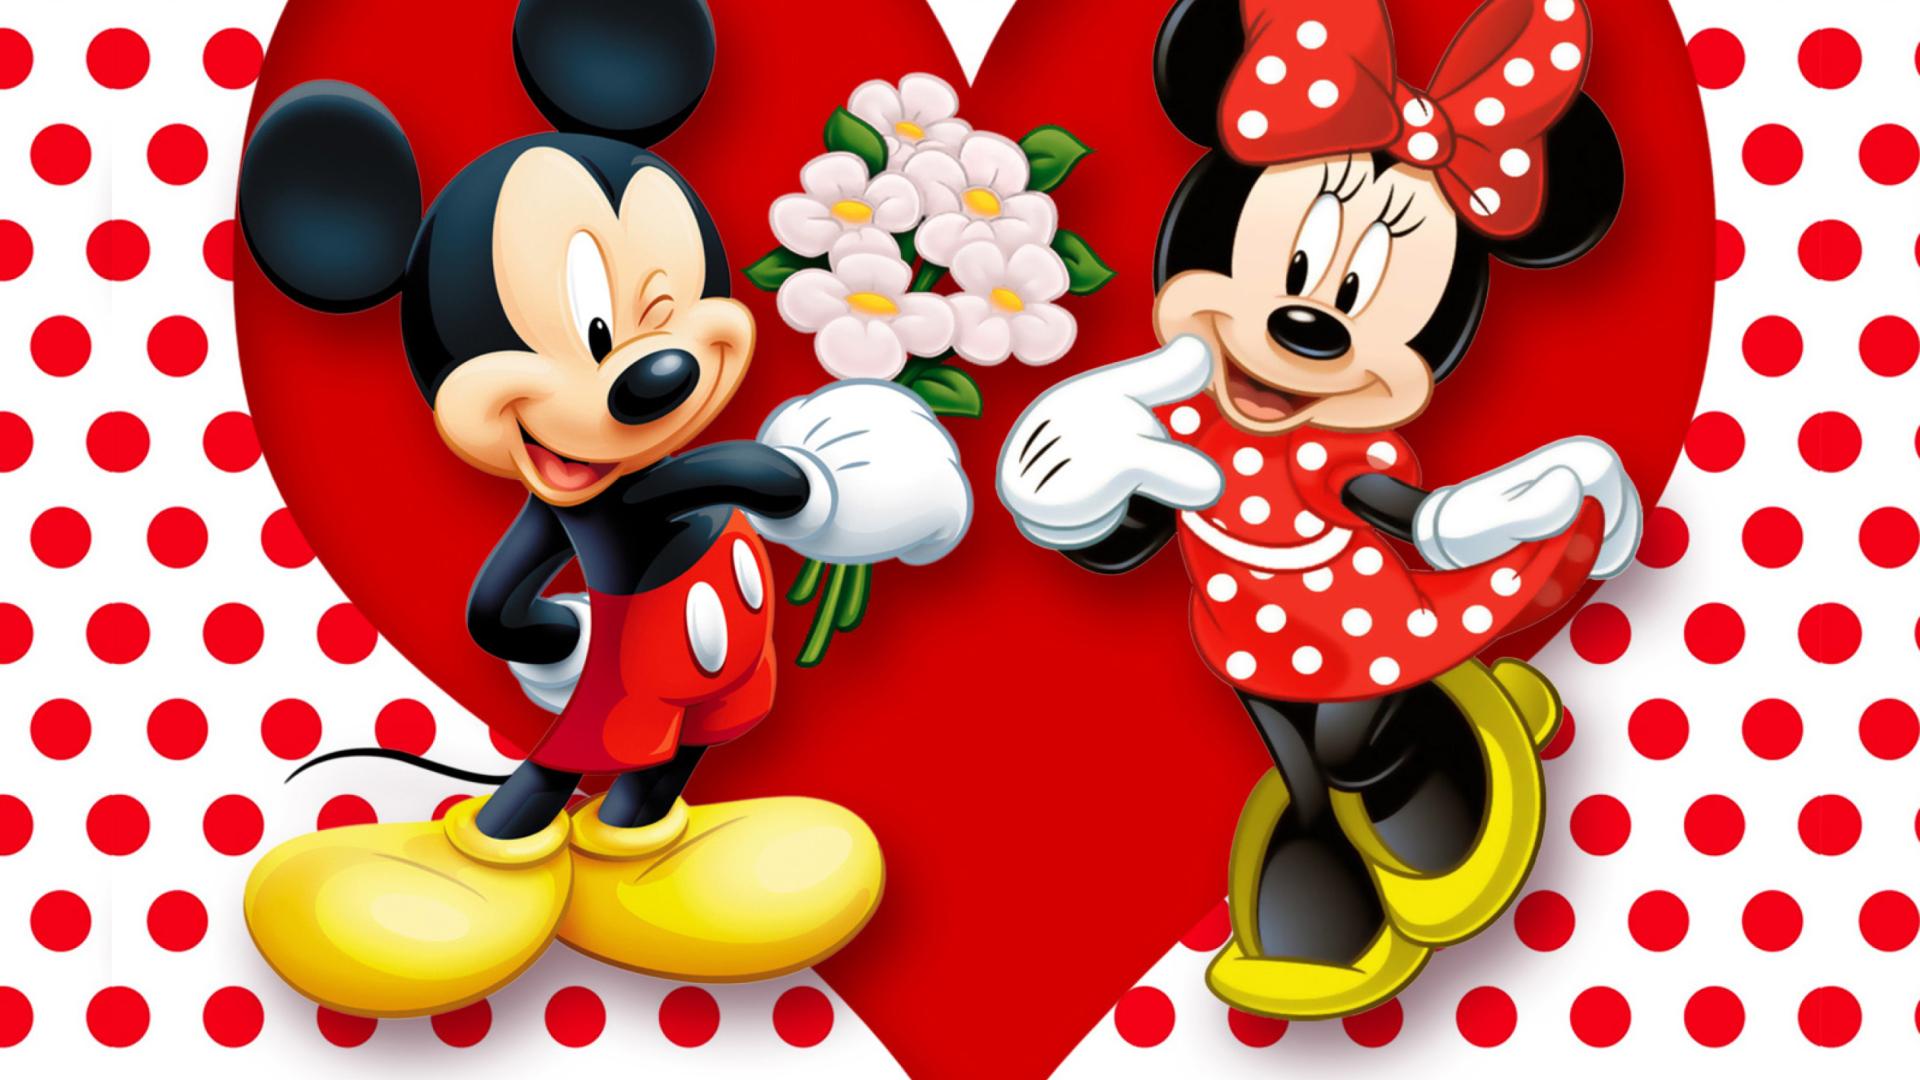 Mickey And Minnie Wallpaper 1080p HPJ5